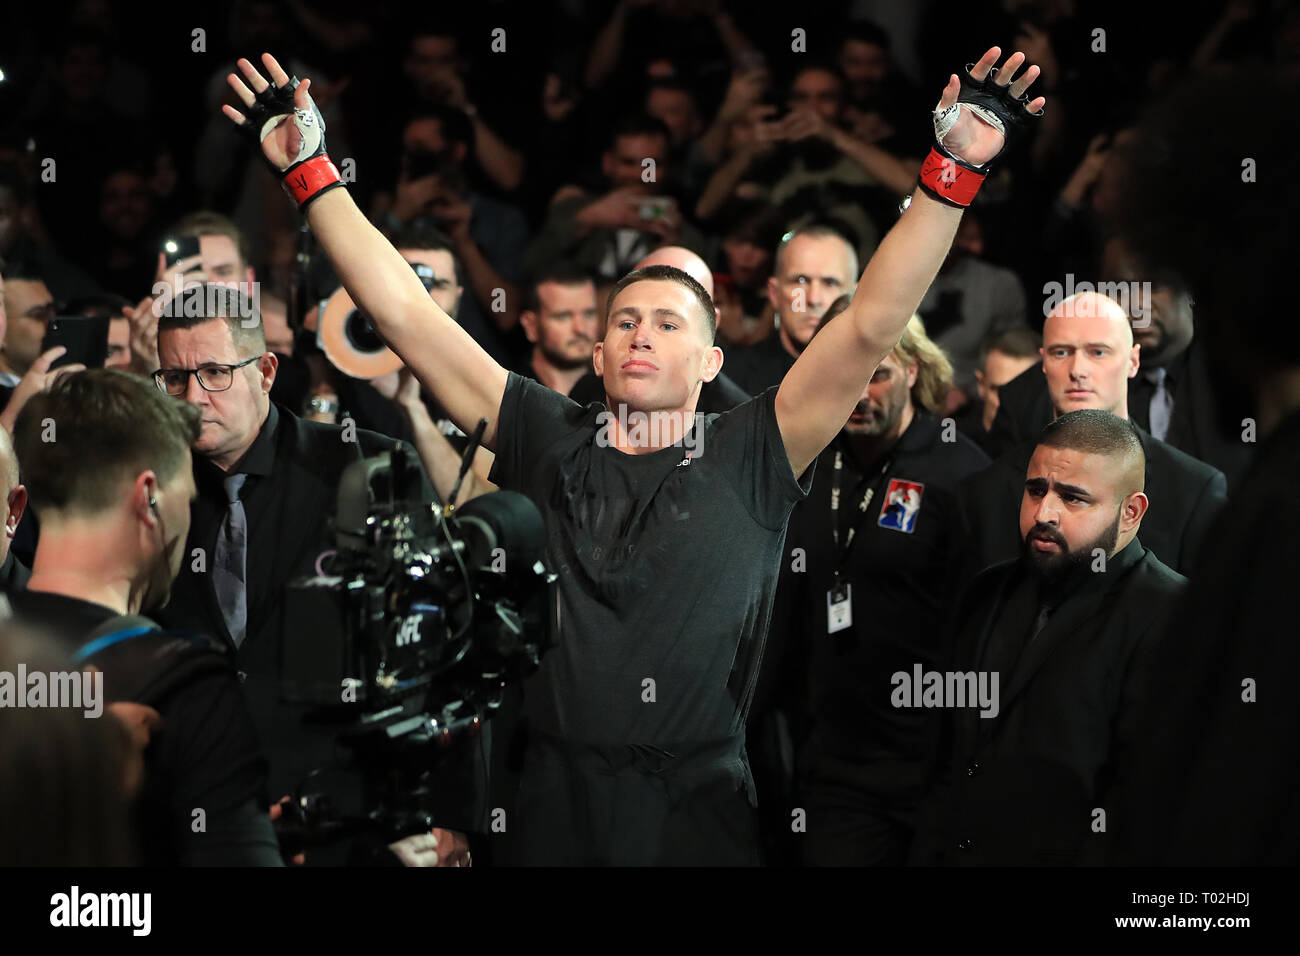 Darren fino alle passeggiate per l'anello prima del suo Welterweight bout durante UFC Fight Night 147 all'O2 Arena, Londra. Foto Stock